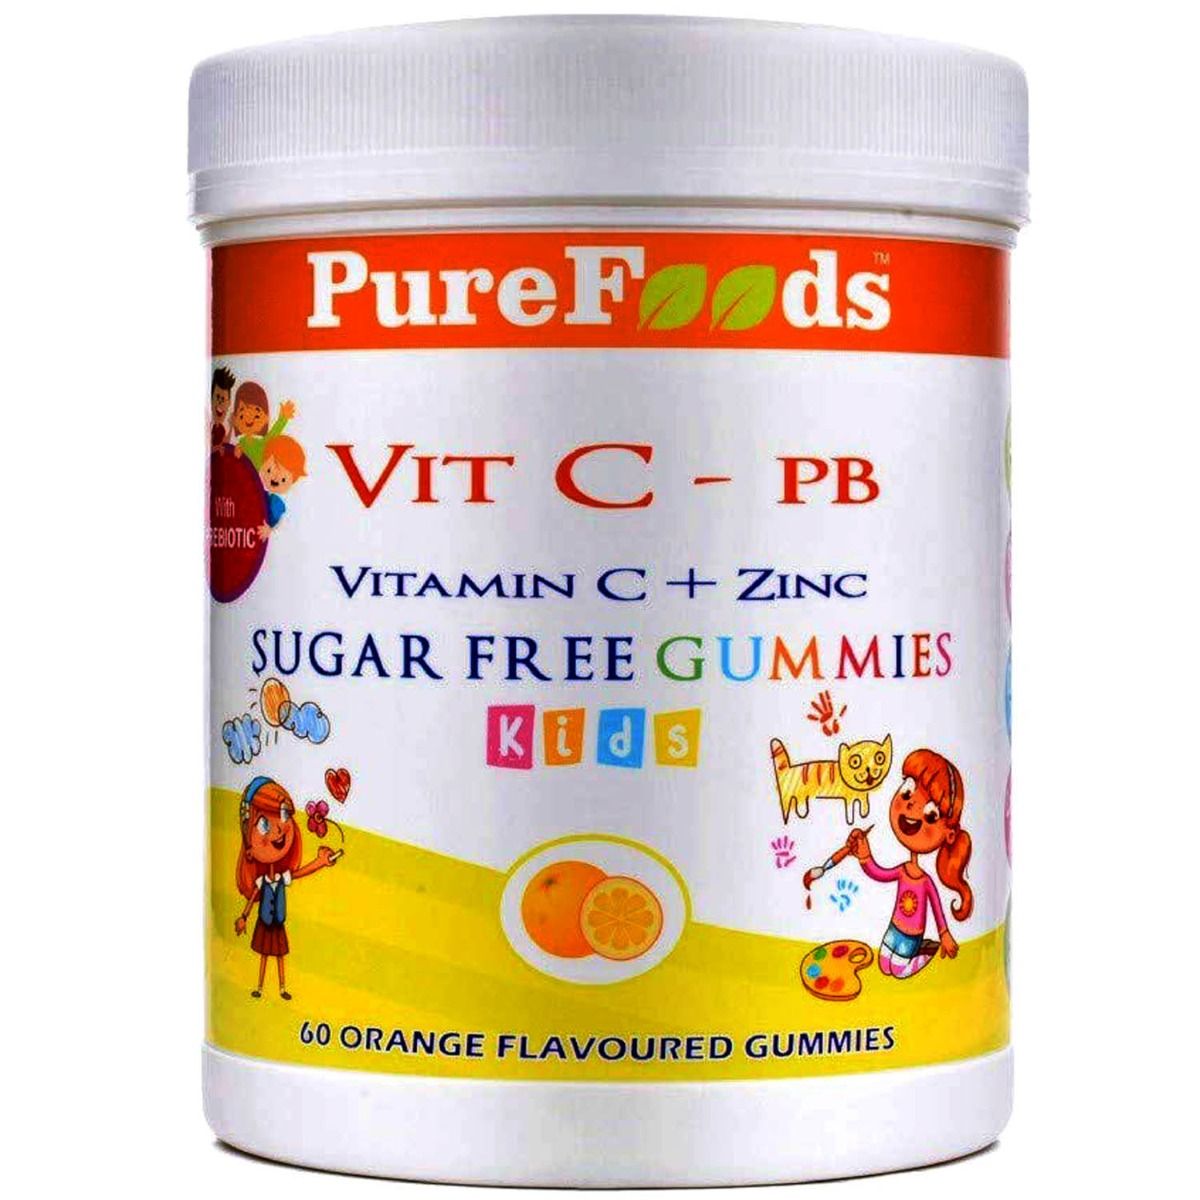 Buy Pure Foods Vitamin C + Zinc Orange Flavour Kids Gummies, 60 Count Online